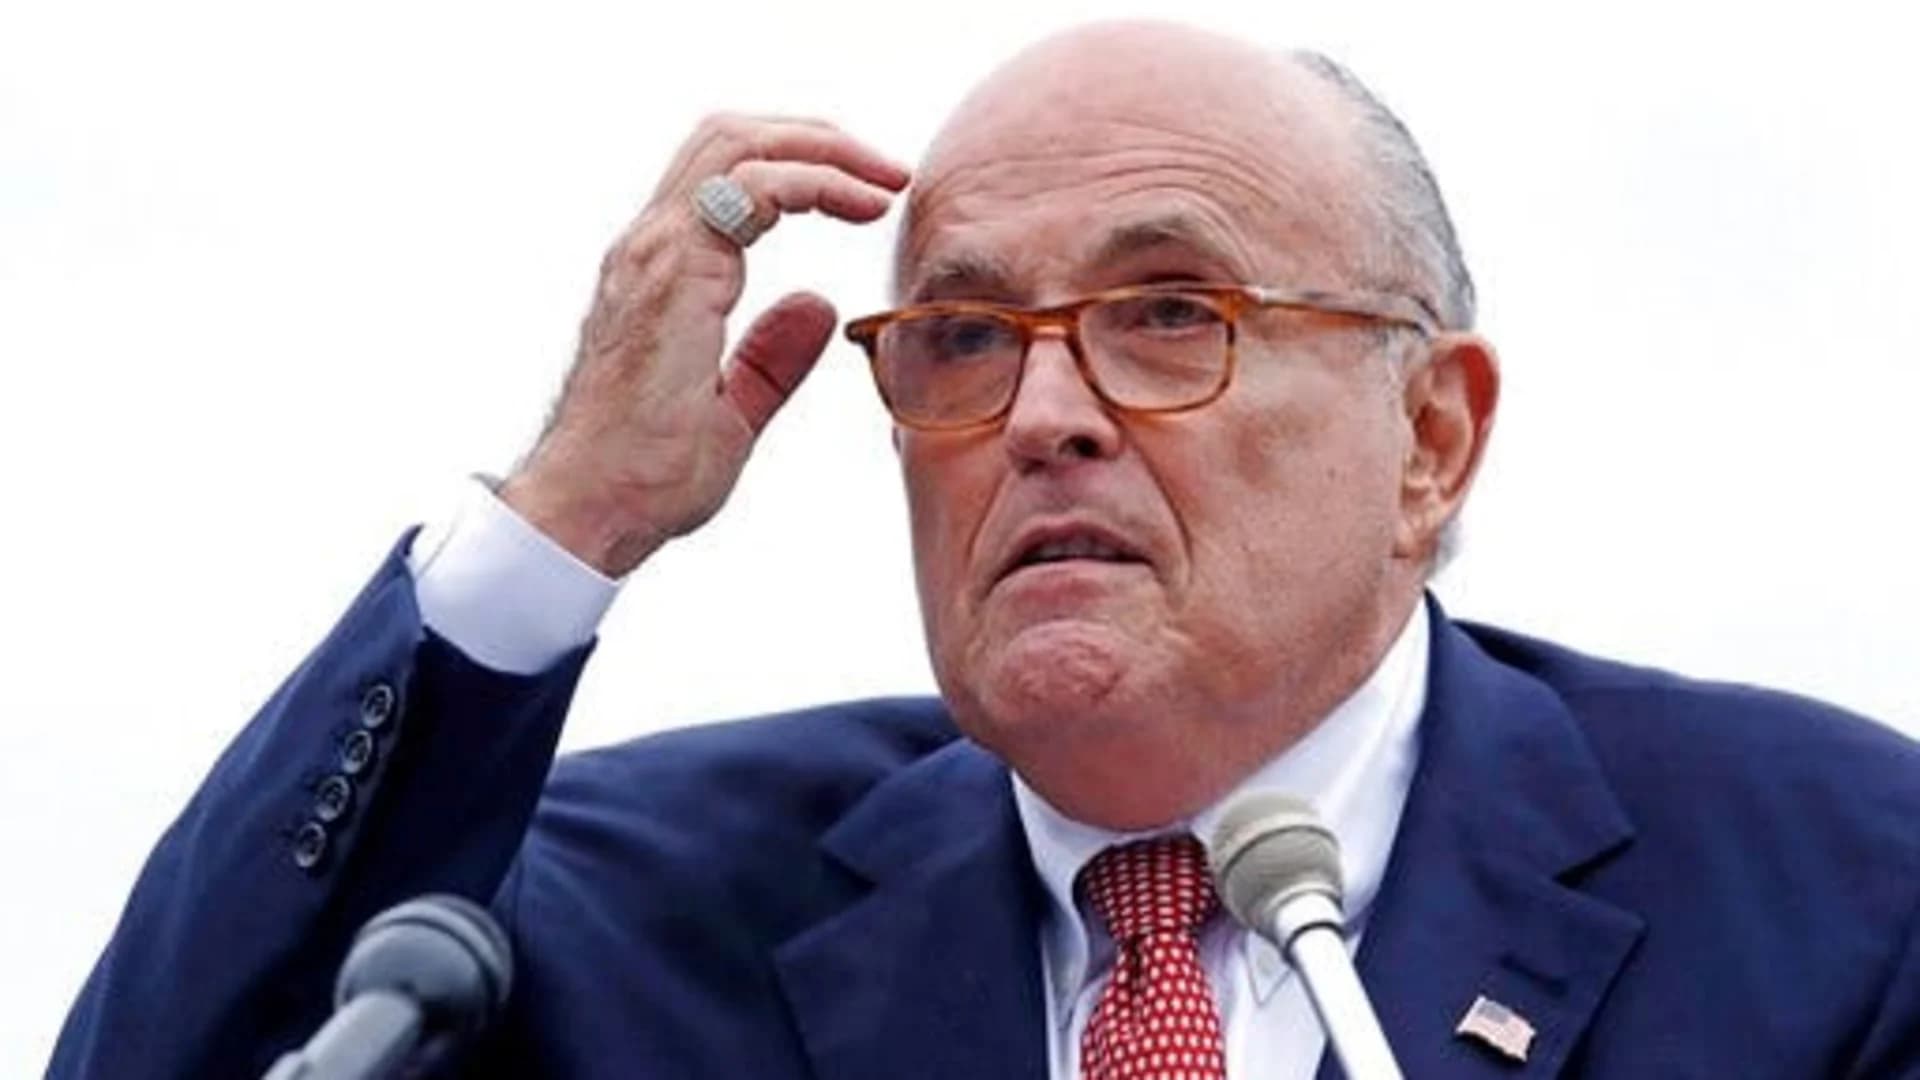 Giuliani subpoenaed as impeachment inquiry accelerates